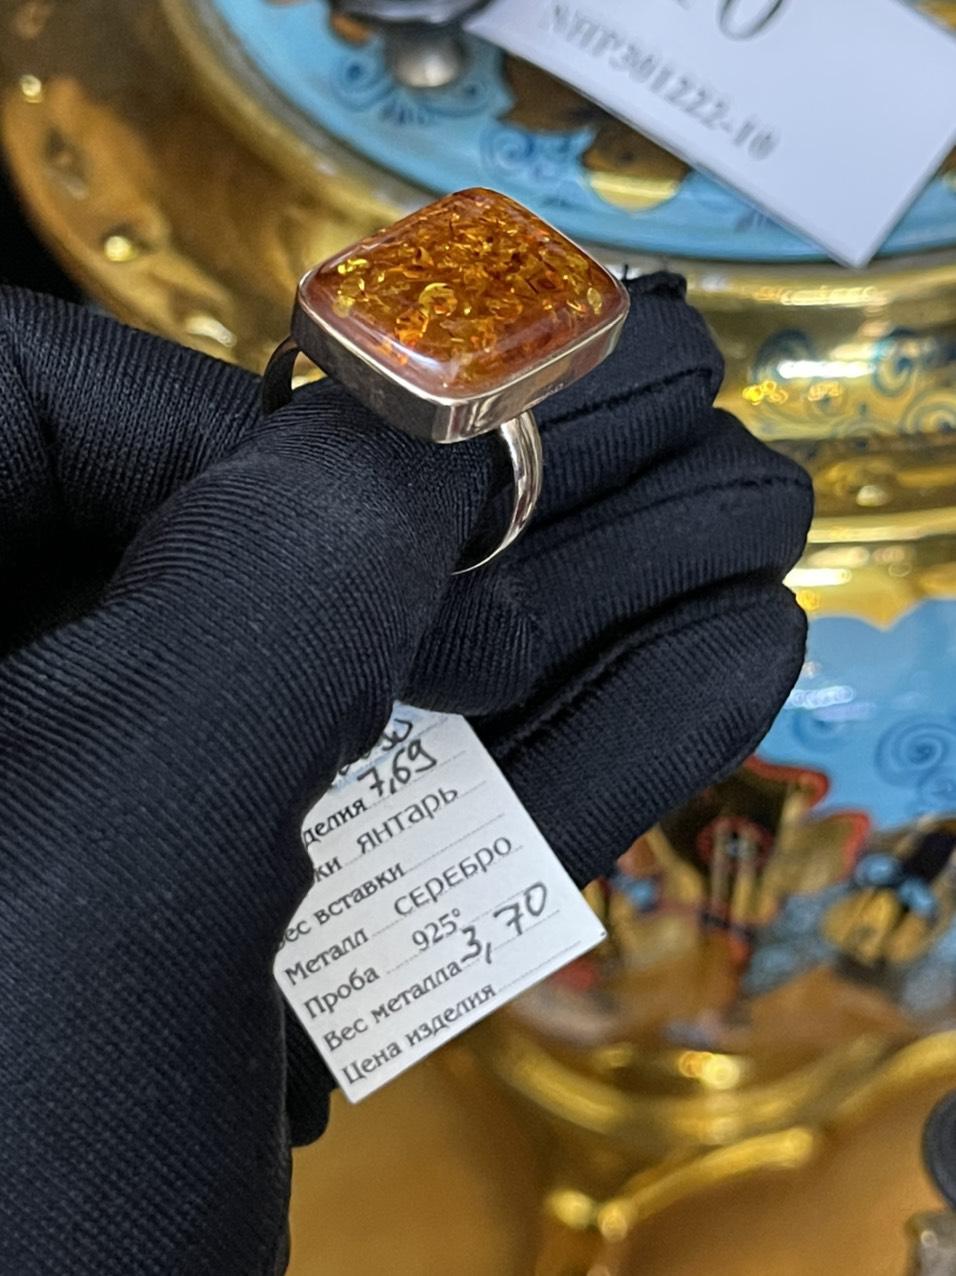 Nhẫn hổ phách vàng cam bọc bạc 925 mạ vàng có triện 925 trên thân nhẫn NHP301222-10